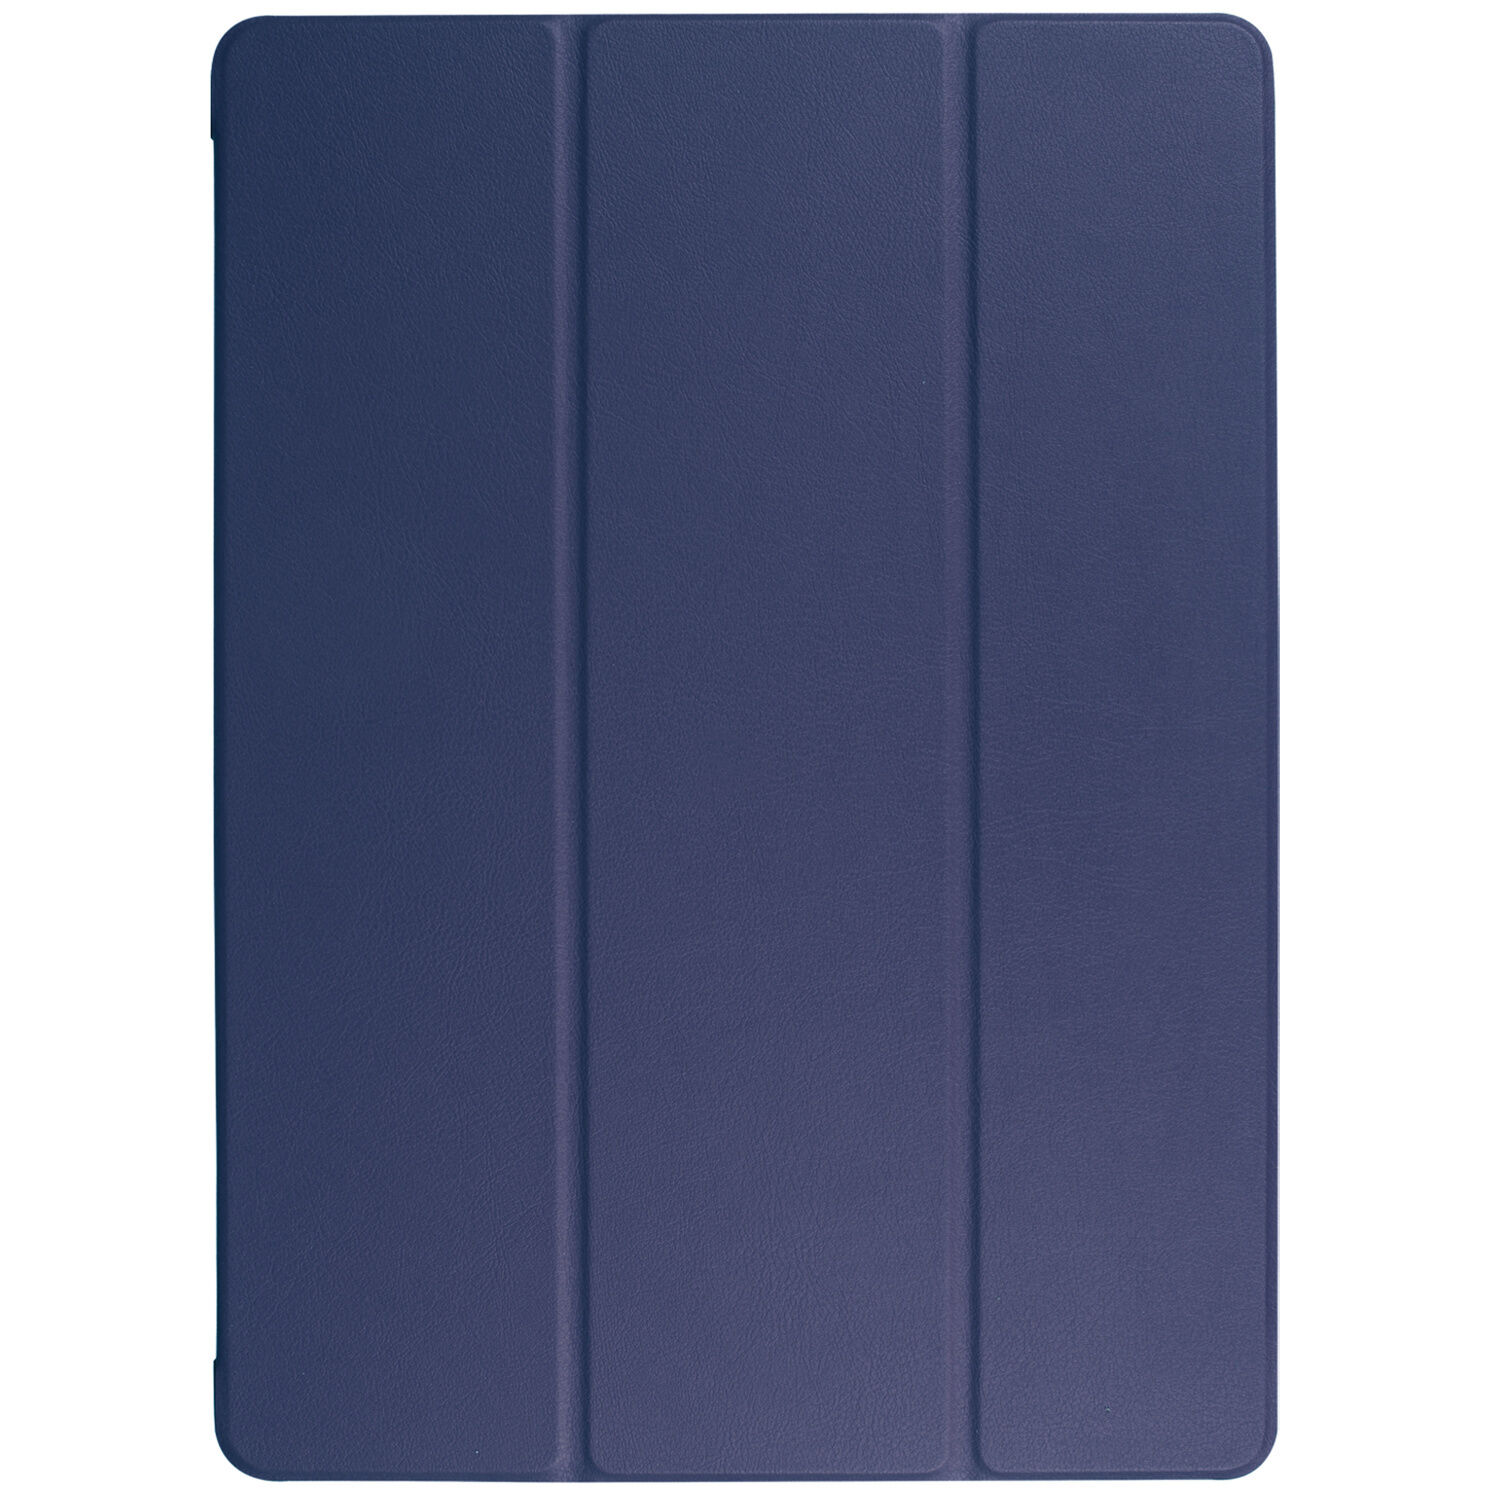 Coquedetelephone.fr Stand étui de tablette portefeuille pour l'iPad 12.9 (2017) - Bleu foncé